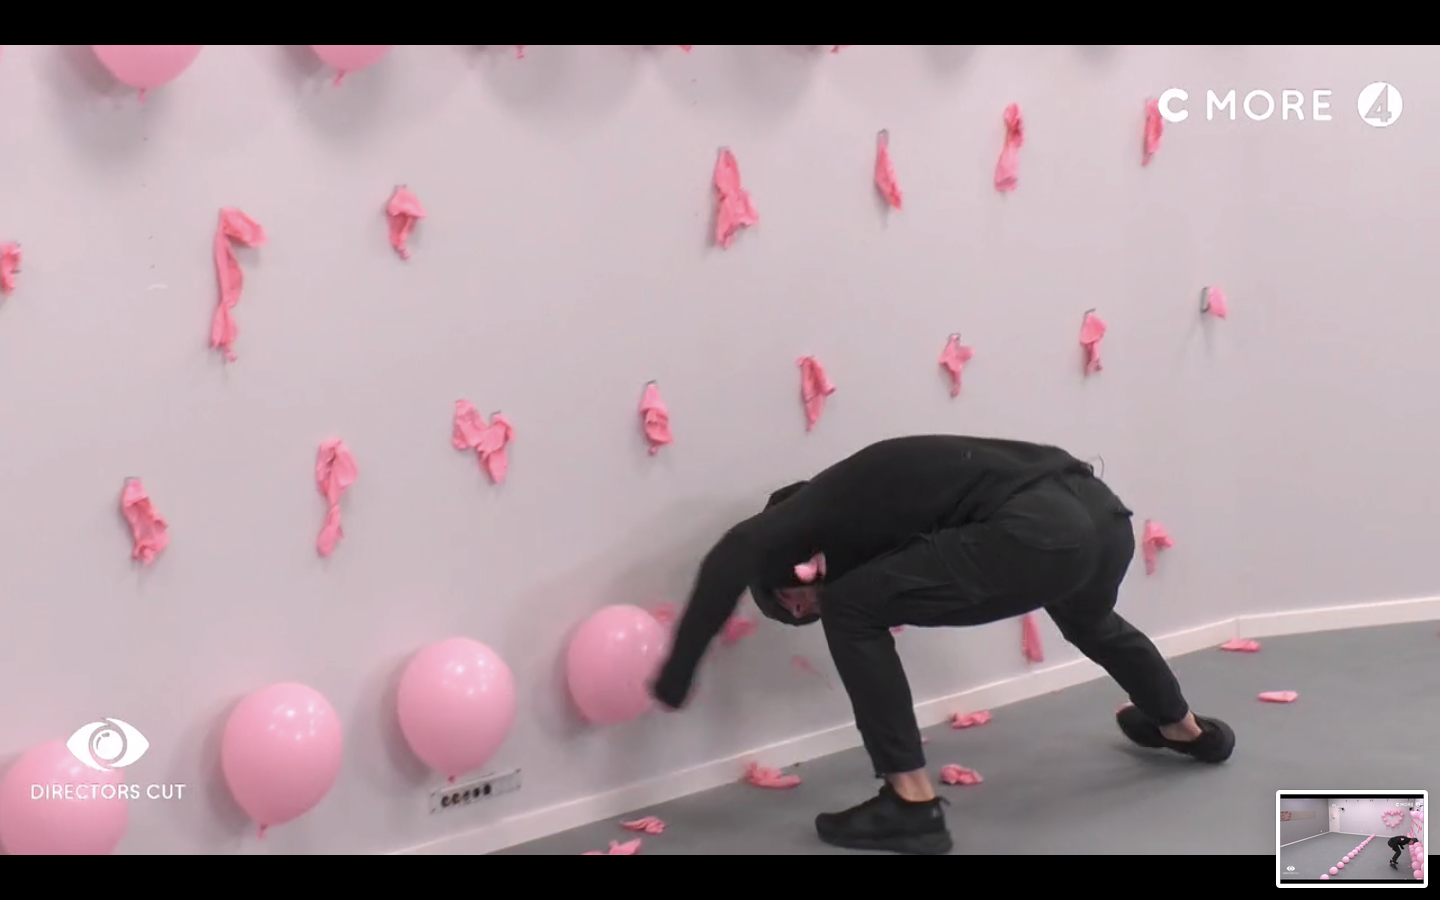 Mergim Feka försökte med hjälp av hjälmen spräcka ballongerna som satt uppsatta på väggen.